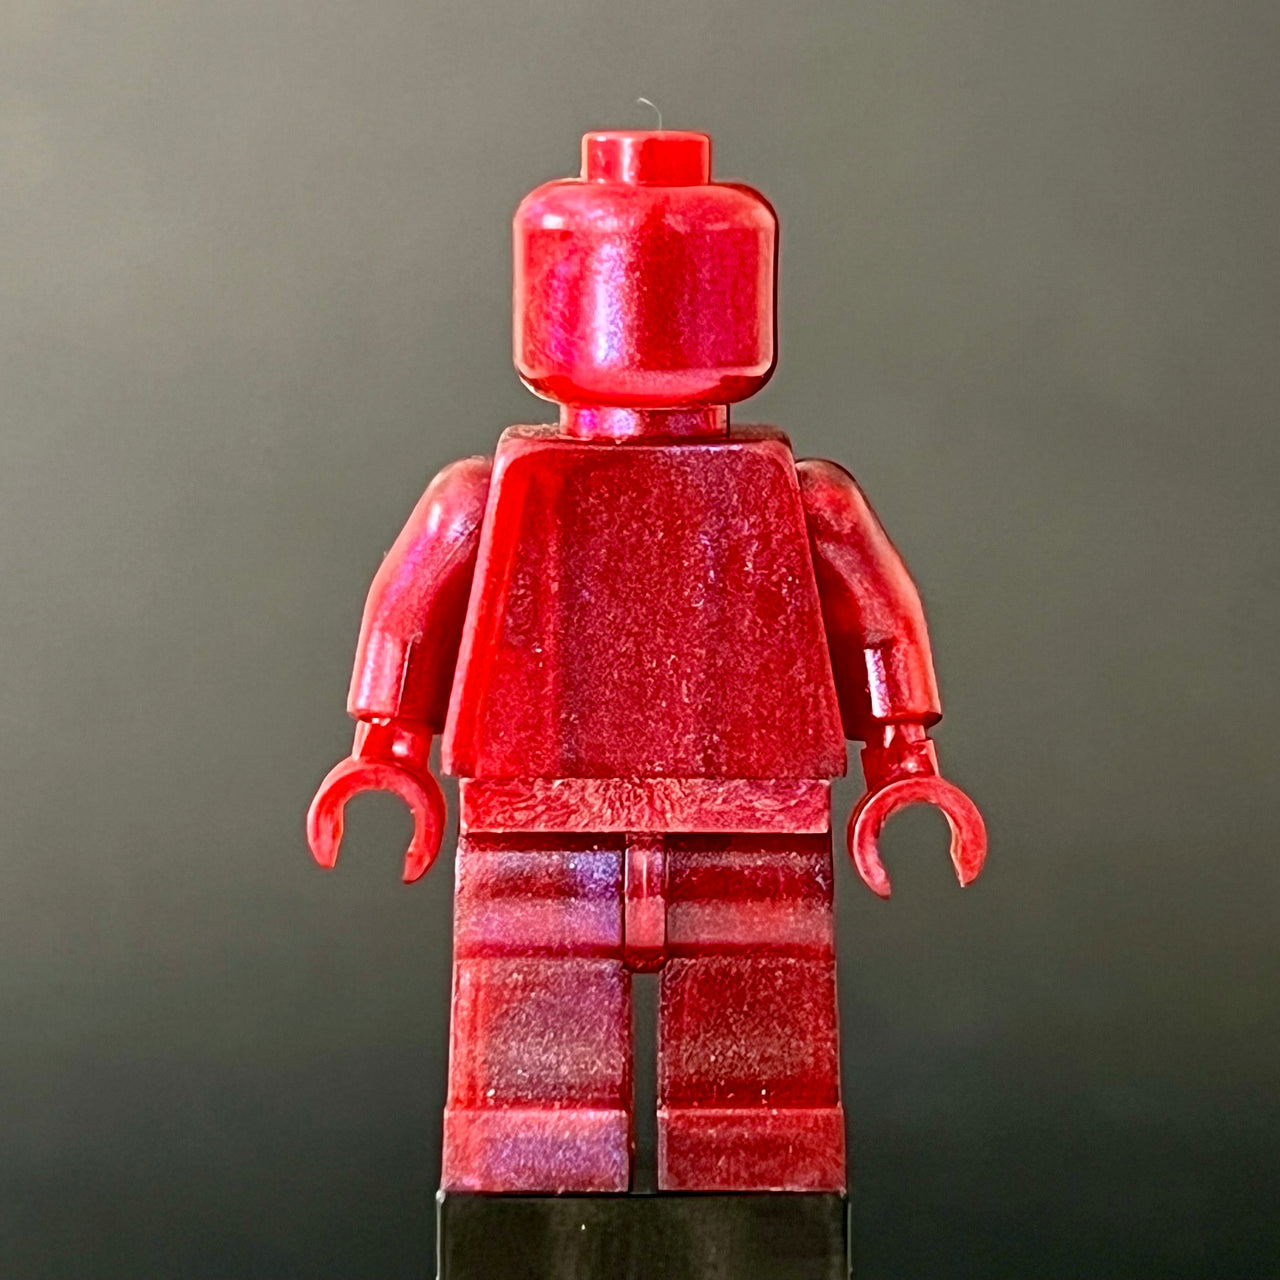 Satin-Dark Red Monochrome Figure